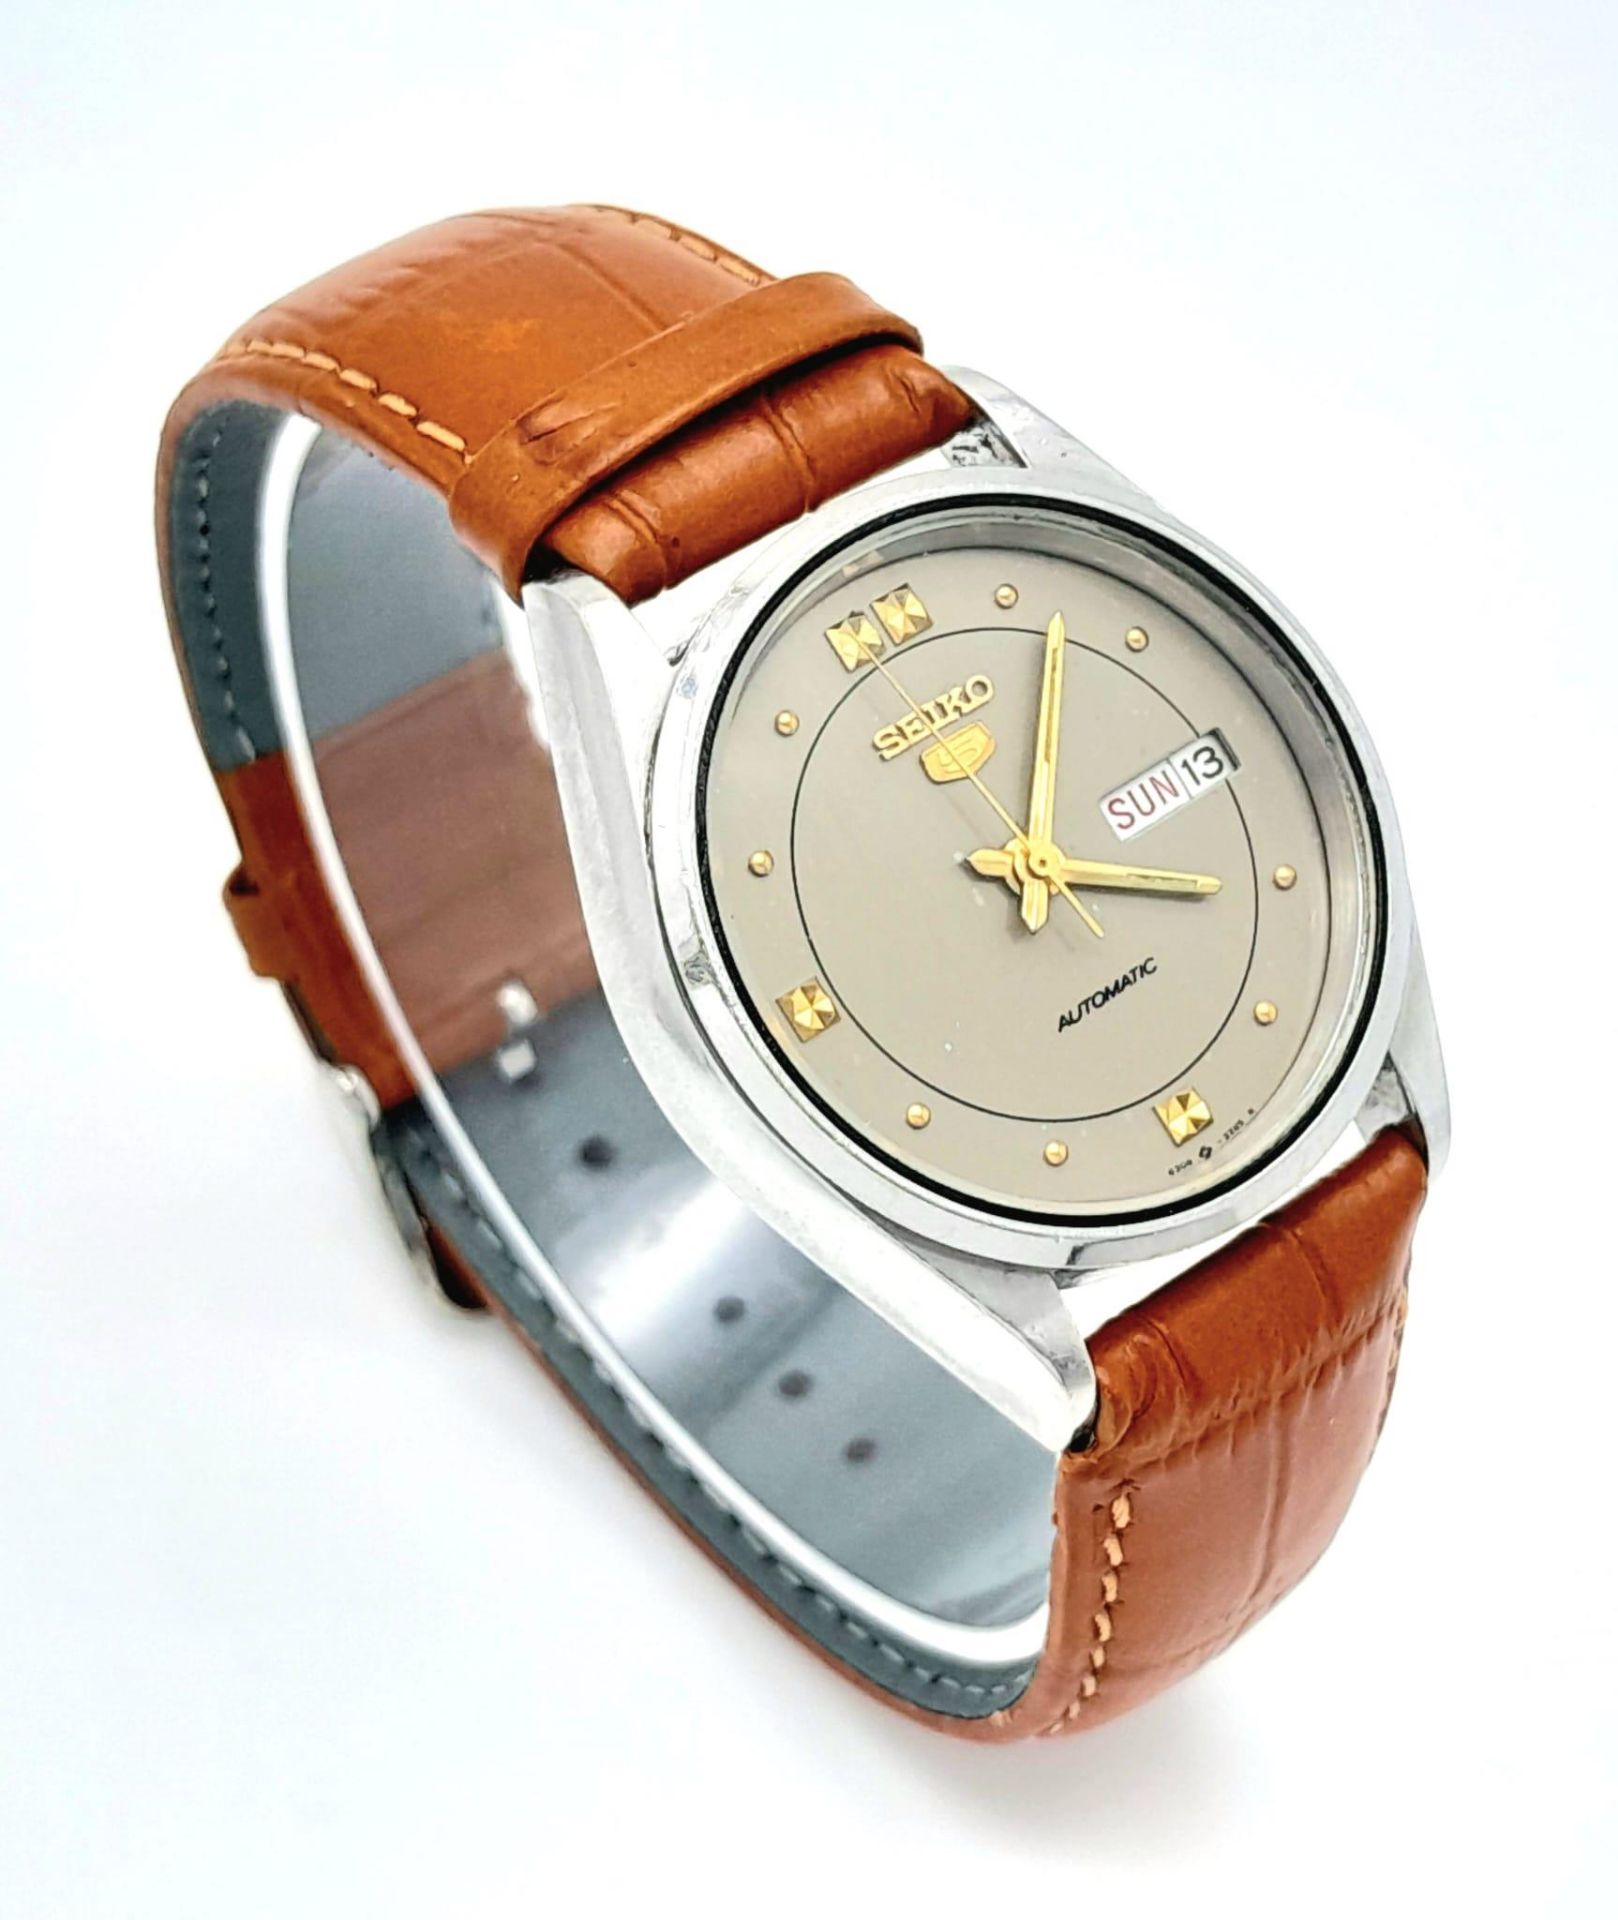 A Vintage Seiko 5 Automatic Gents Watch. Brown leather strap. Stainless steel case - 36mm. Dark grey - Bild 5 aus 11